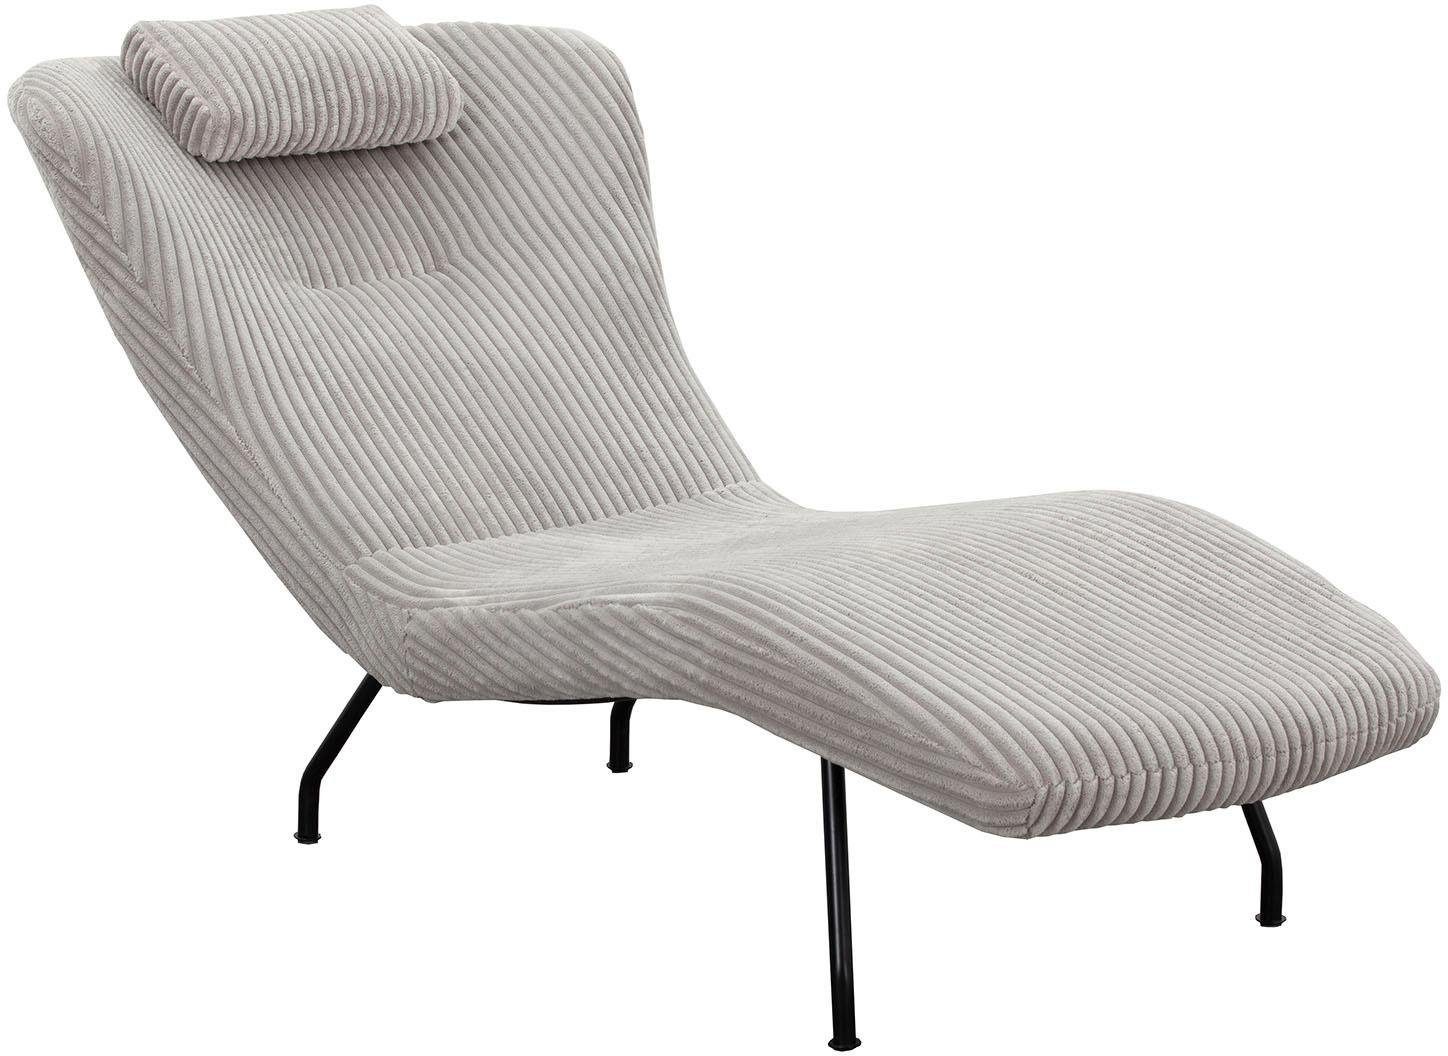 SalesFever Relaxsessel, mit modernem Cord Bezug, gemütliche Relaxliege | Sessel